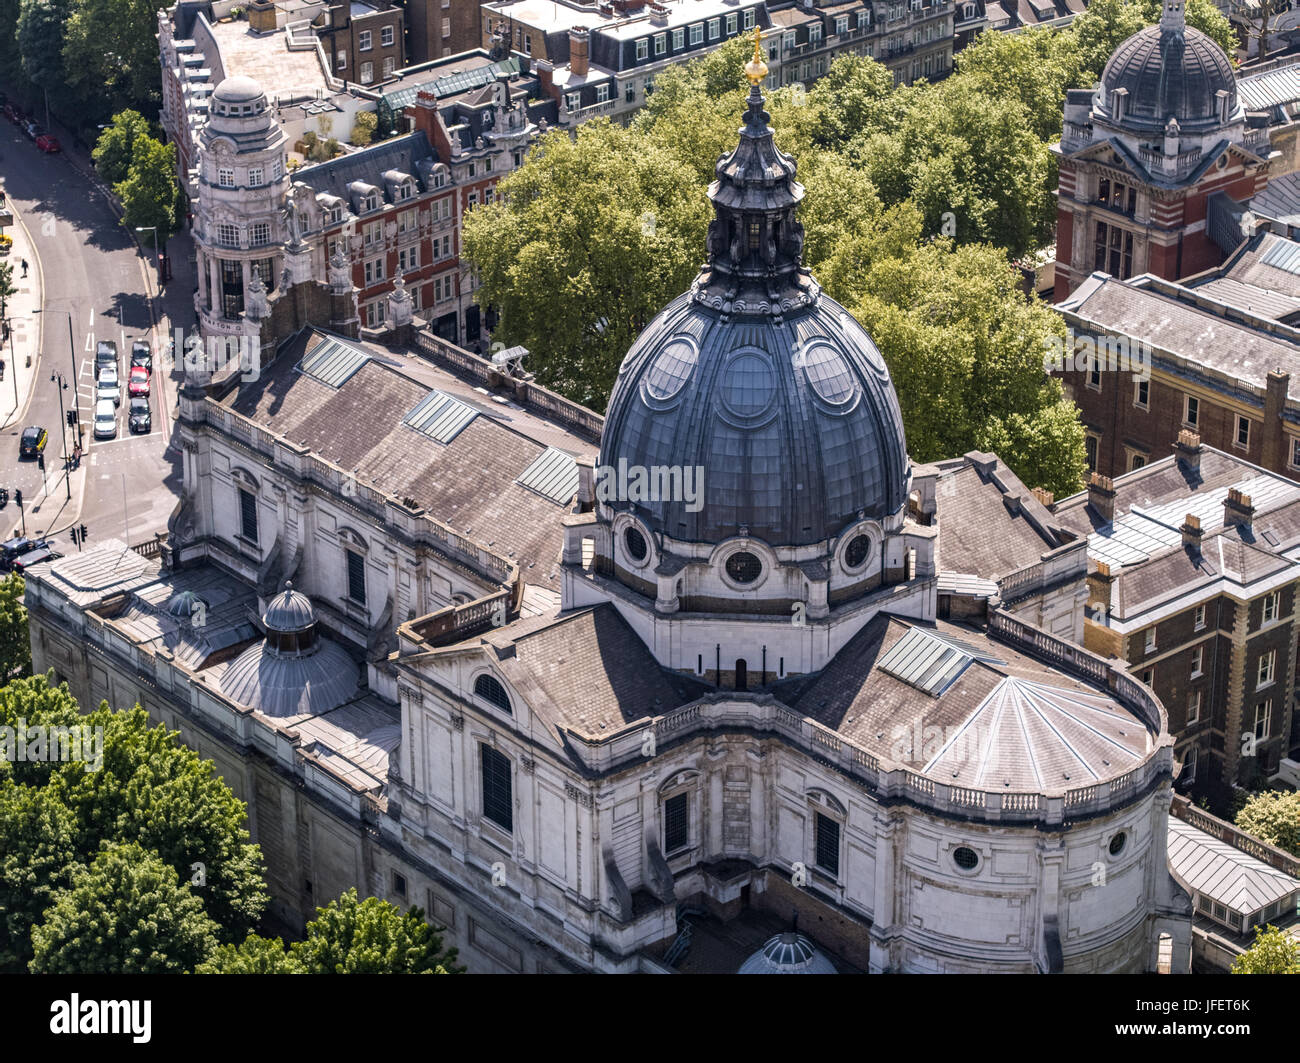 Une vue aérienne au-dessus de Kensington à Londres Angleterre Royaume-uni avec l'Oratoire de Londres au premier plan, près du Victoria & Albert museum Banque D'Images